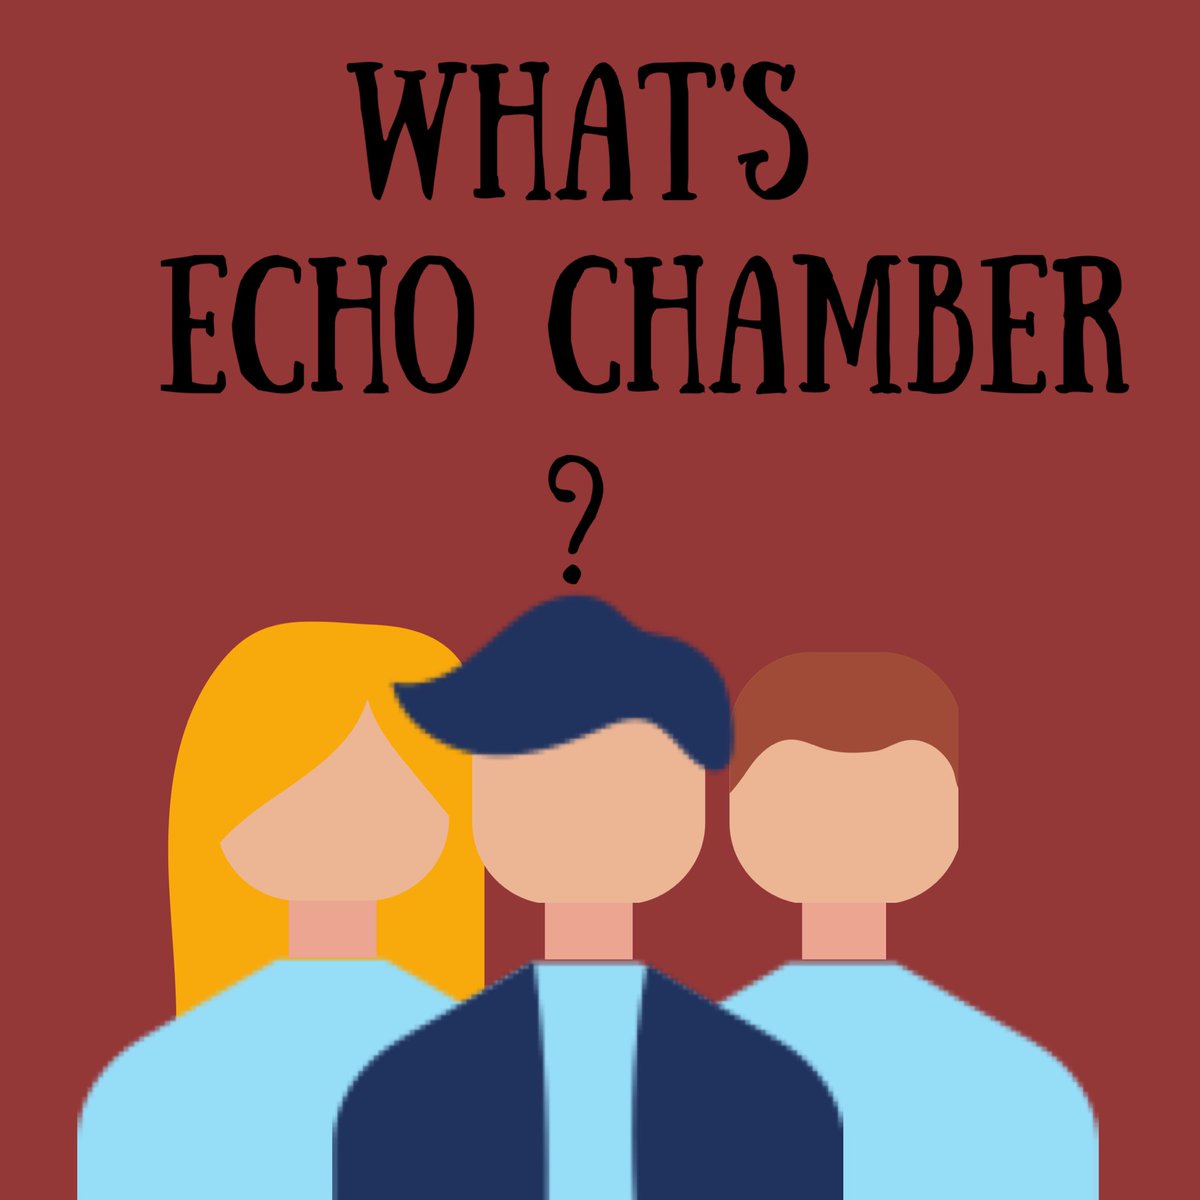 Lalu apa itu Echo chamber ? echo chamber adalah sebuah deskripsi kiasan dari sebuah keadaan dimana keyakinan diyakini atau disebarkan oleh komunitas dan diulang-ulang dalam sebuah sistem tertutup. source : Wikipedia